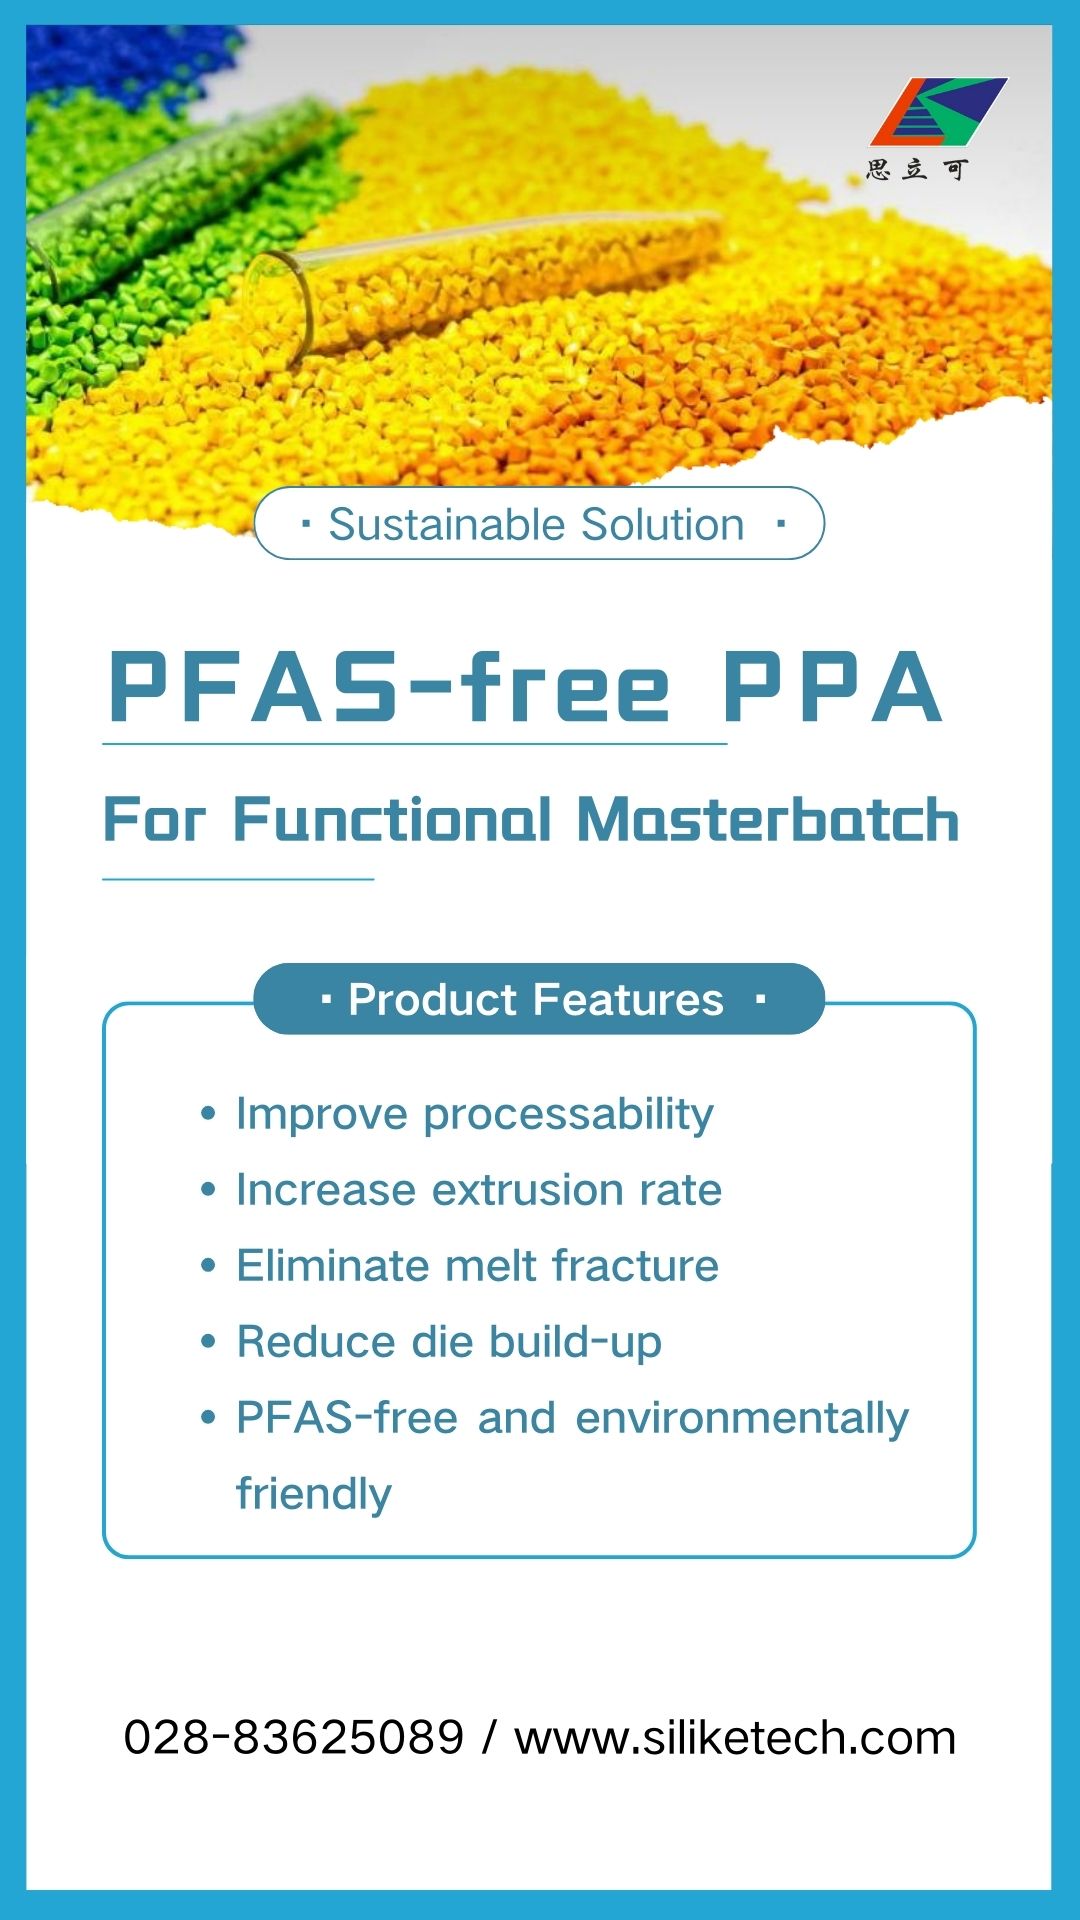 O PPA sen PFAS resolve as dificultades do procesamento de masterbatch funcional: elimina a fractura de fusión, reduce a acumulación de matrices.